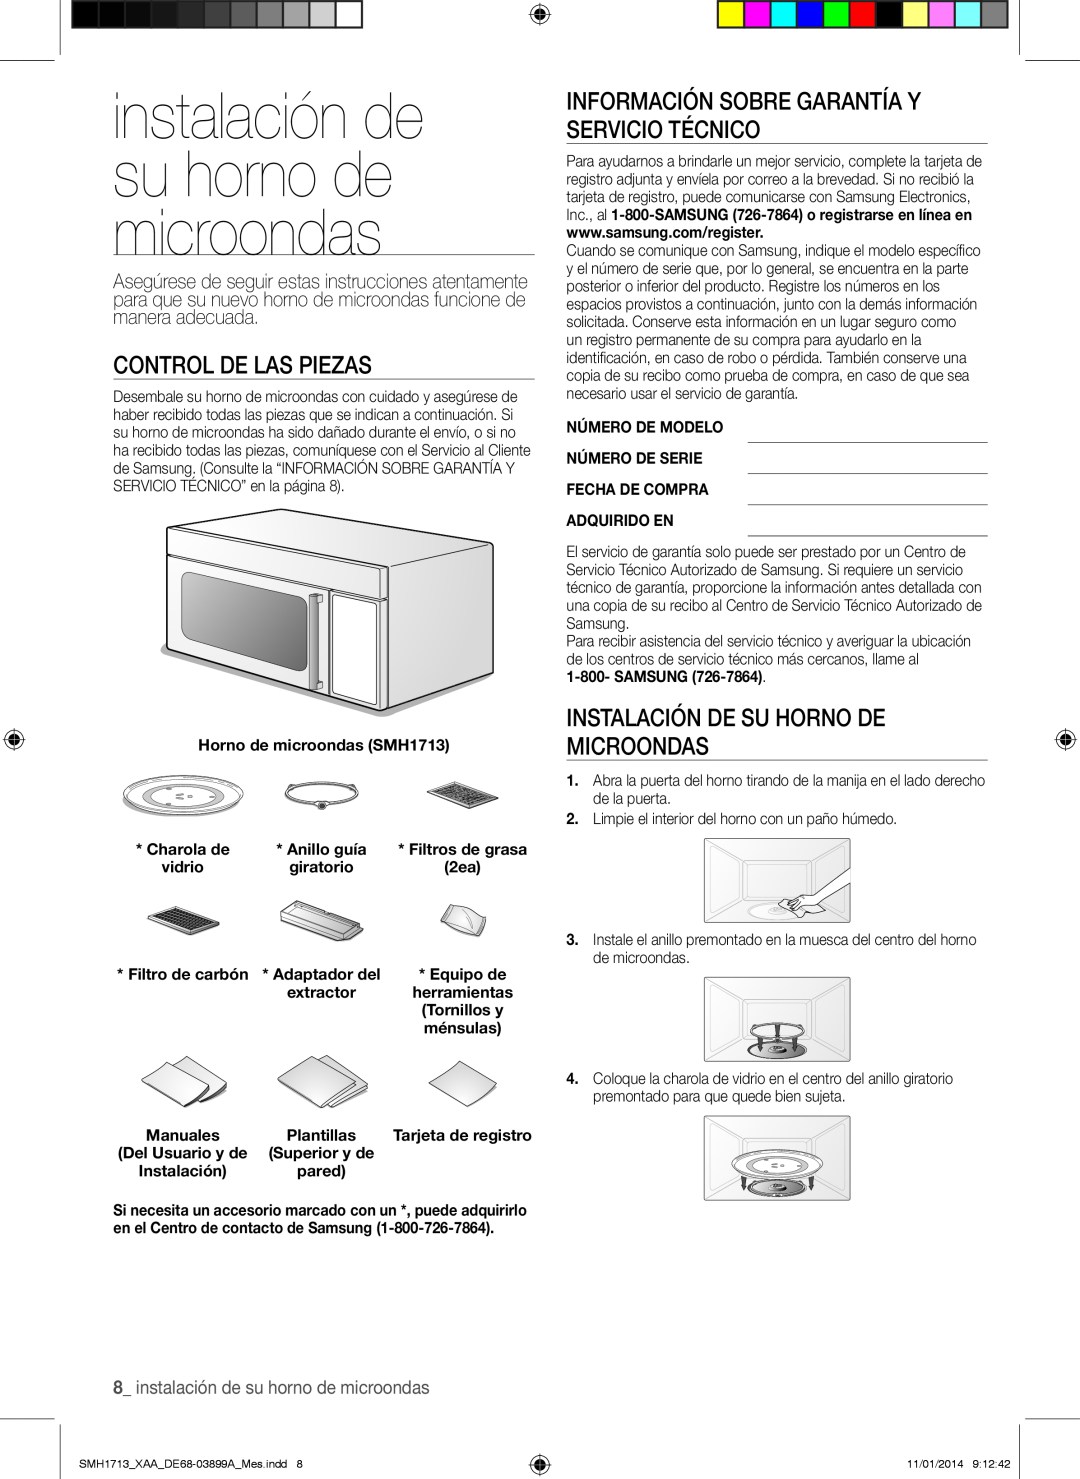 Samsung SMH1713 instalación de su horno de microondas, Control de las piezas, Instalación de su horno de microondas 